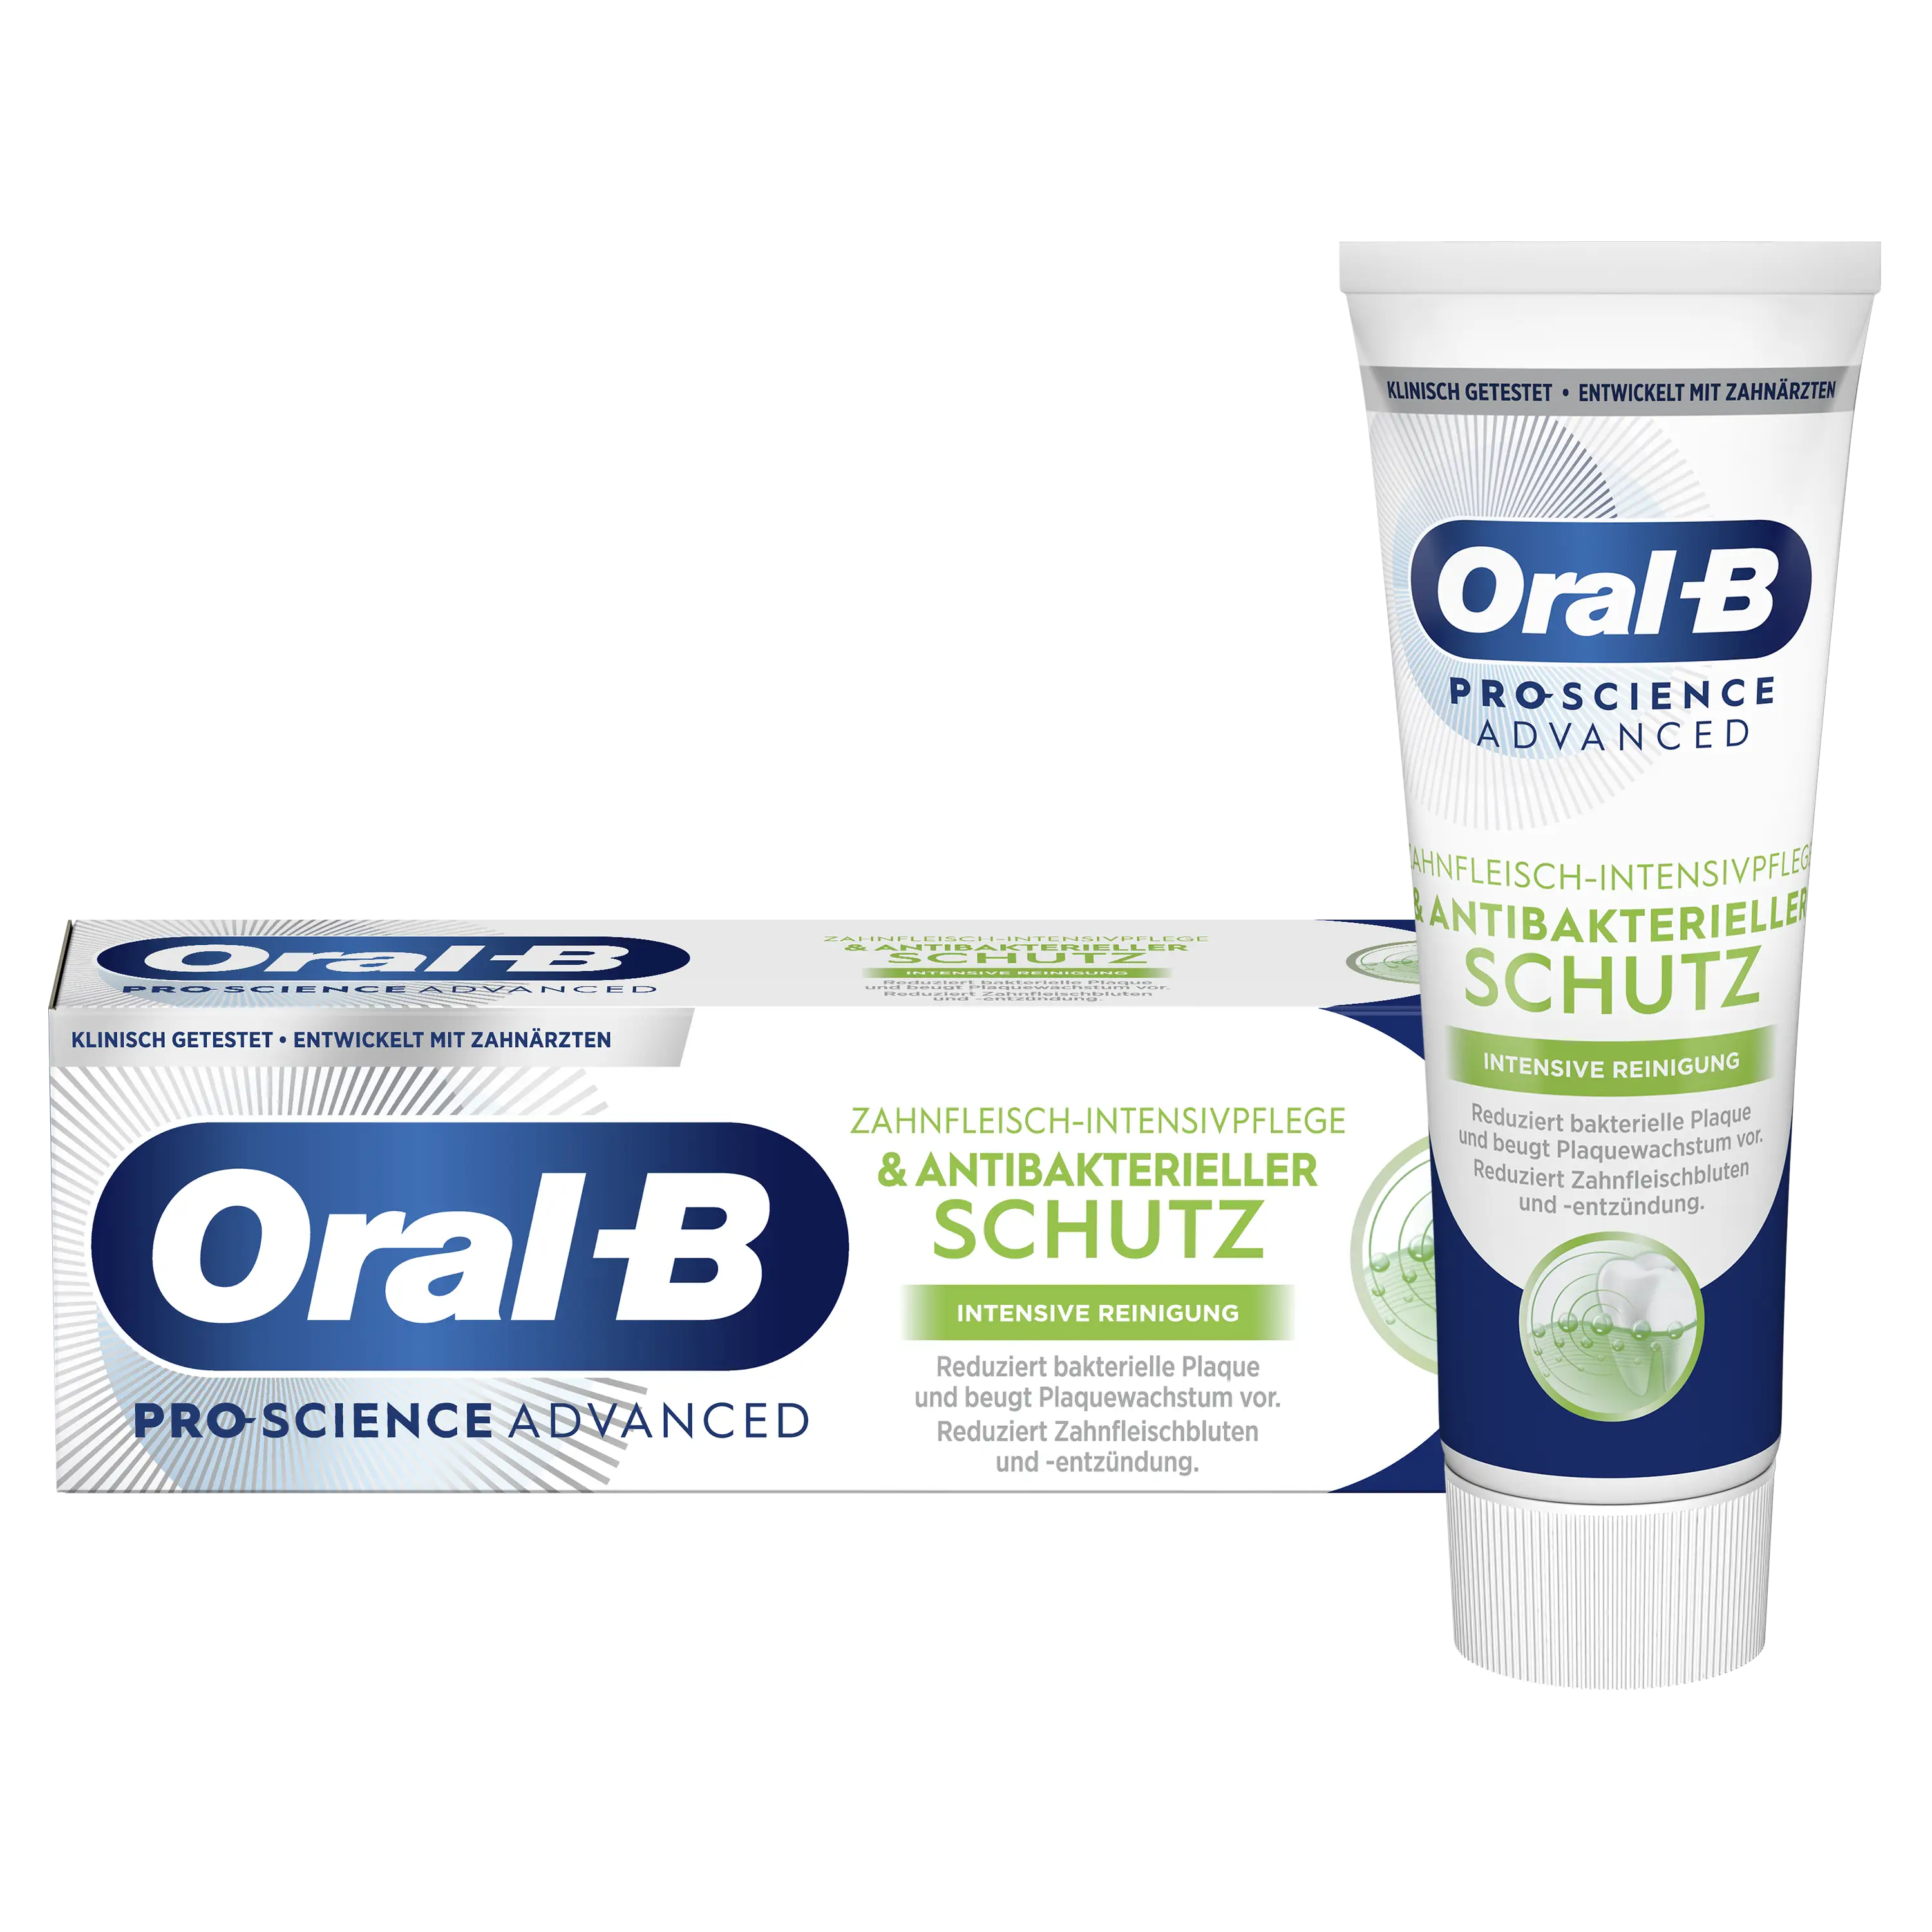 Image - Oral-B Professional Zahnfleisch-Intensivpflege & Antibakterieller Schutz Zahnpasta - Intensive Reinigung - 1 